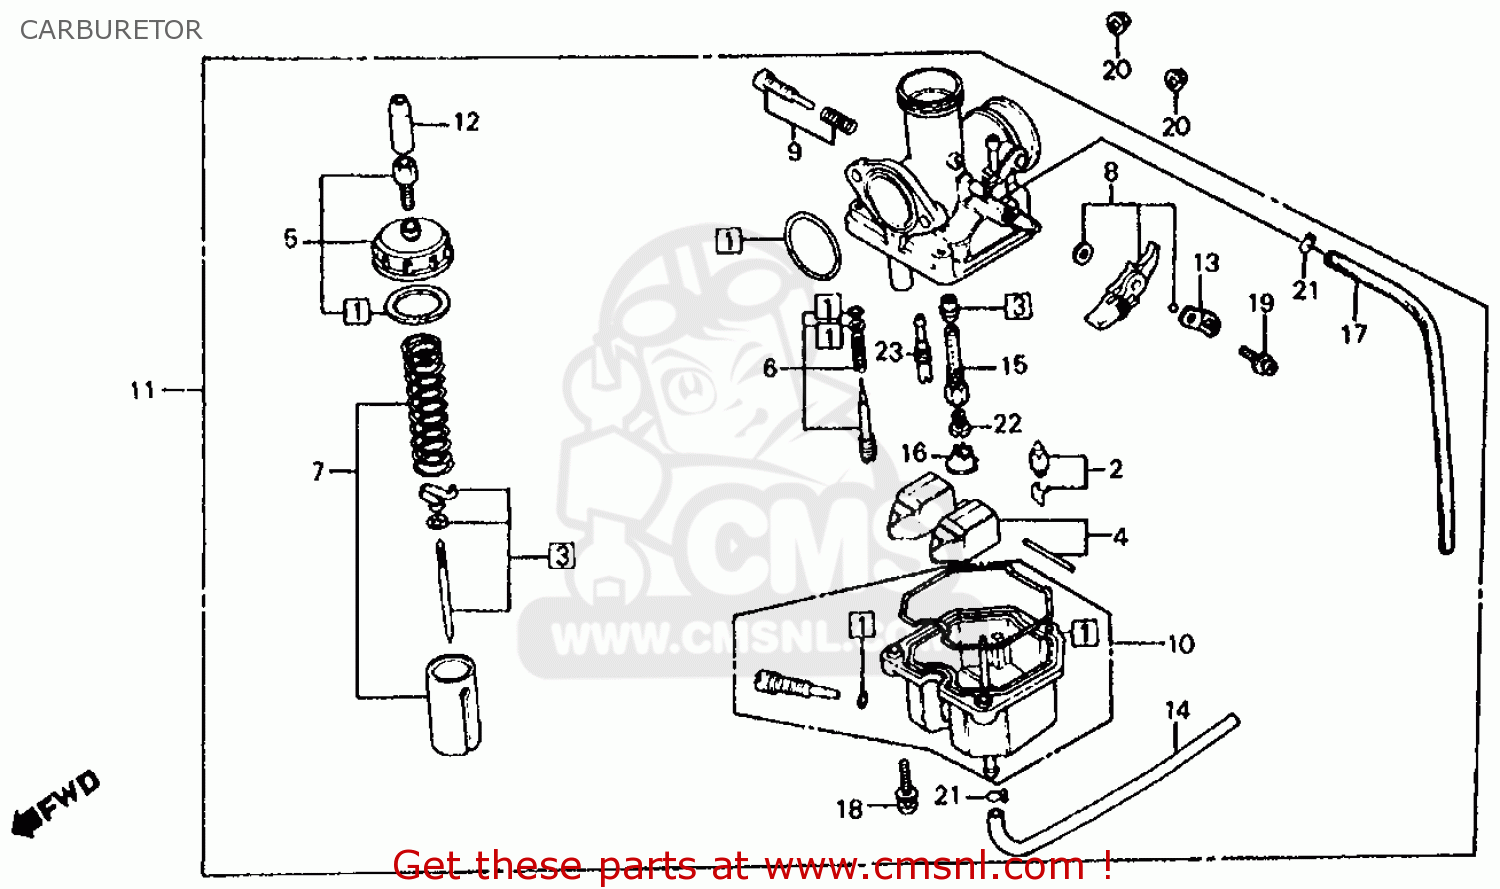 Honda ATC185S 1981 (B) USA CARBURETOR - buy CARBURETOR ... 2005 mercury 200 efi wiring diagram 